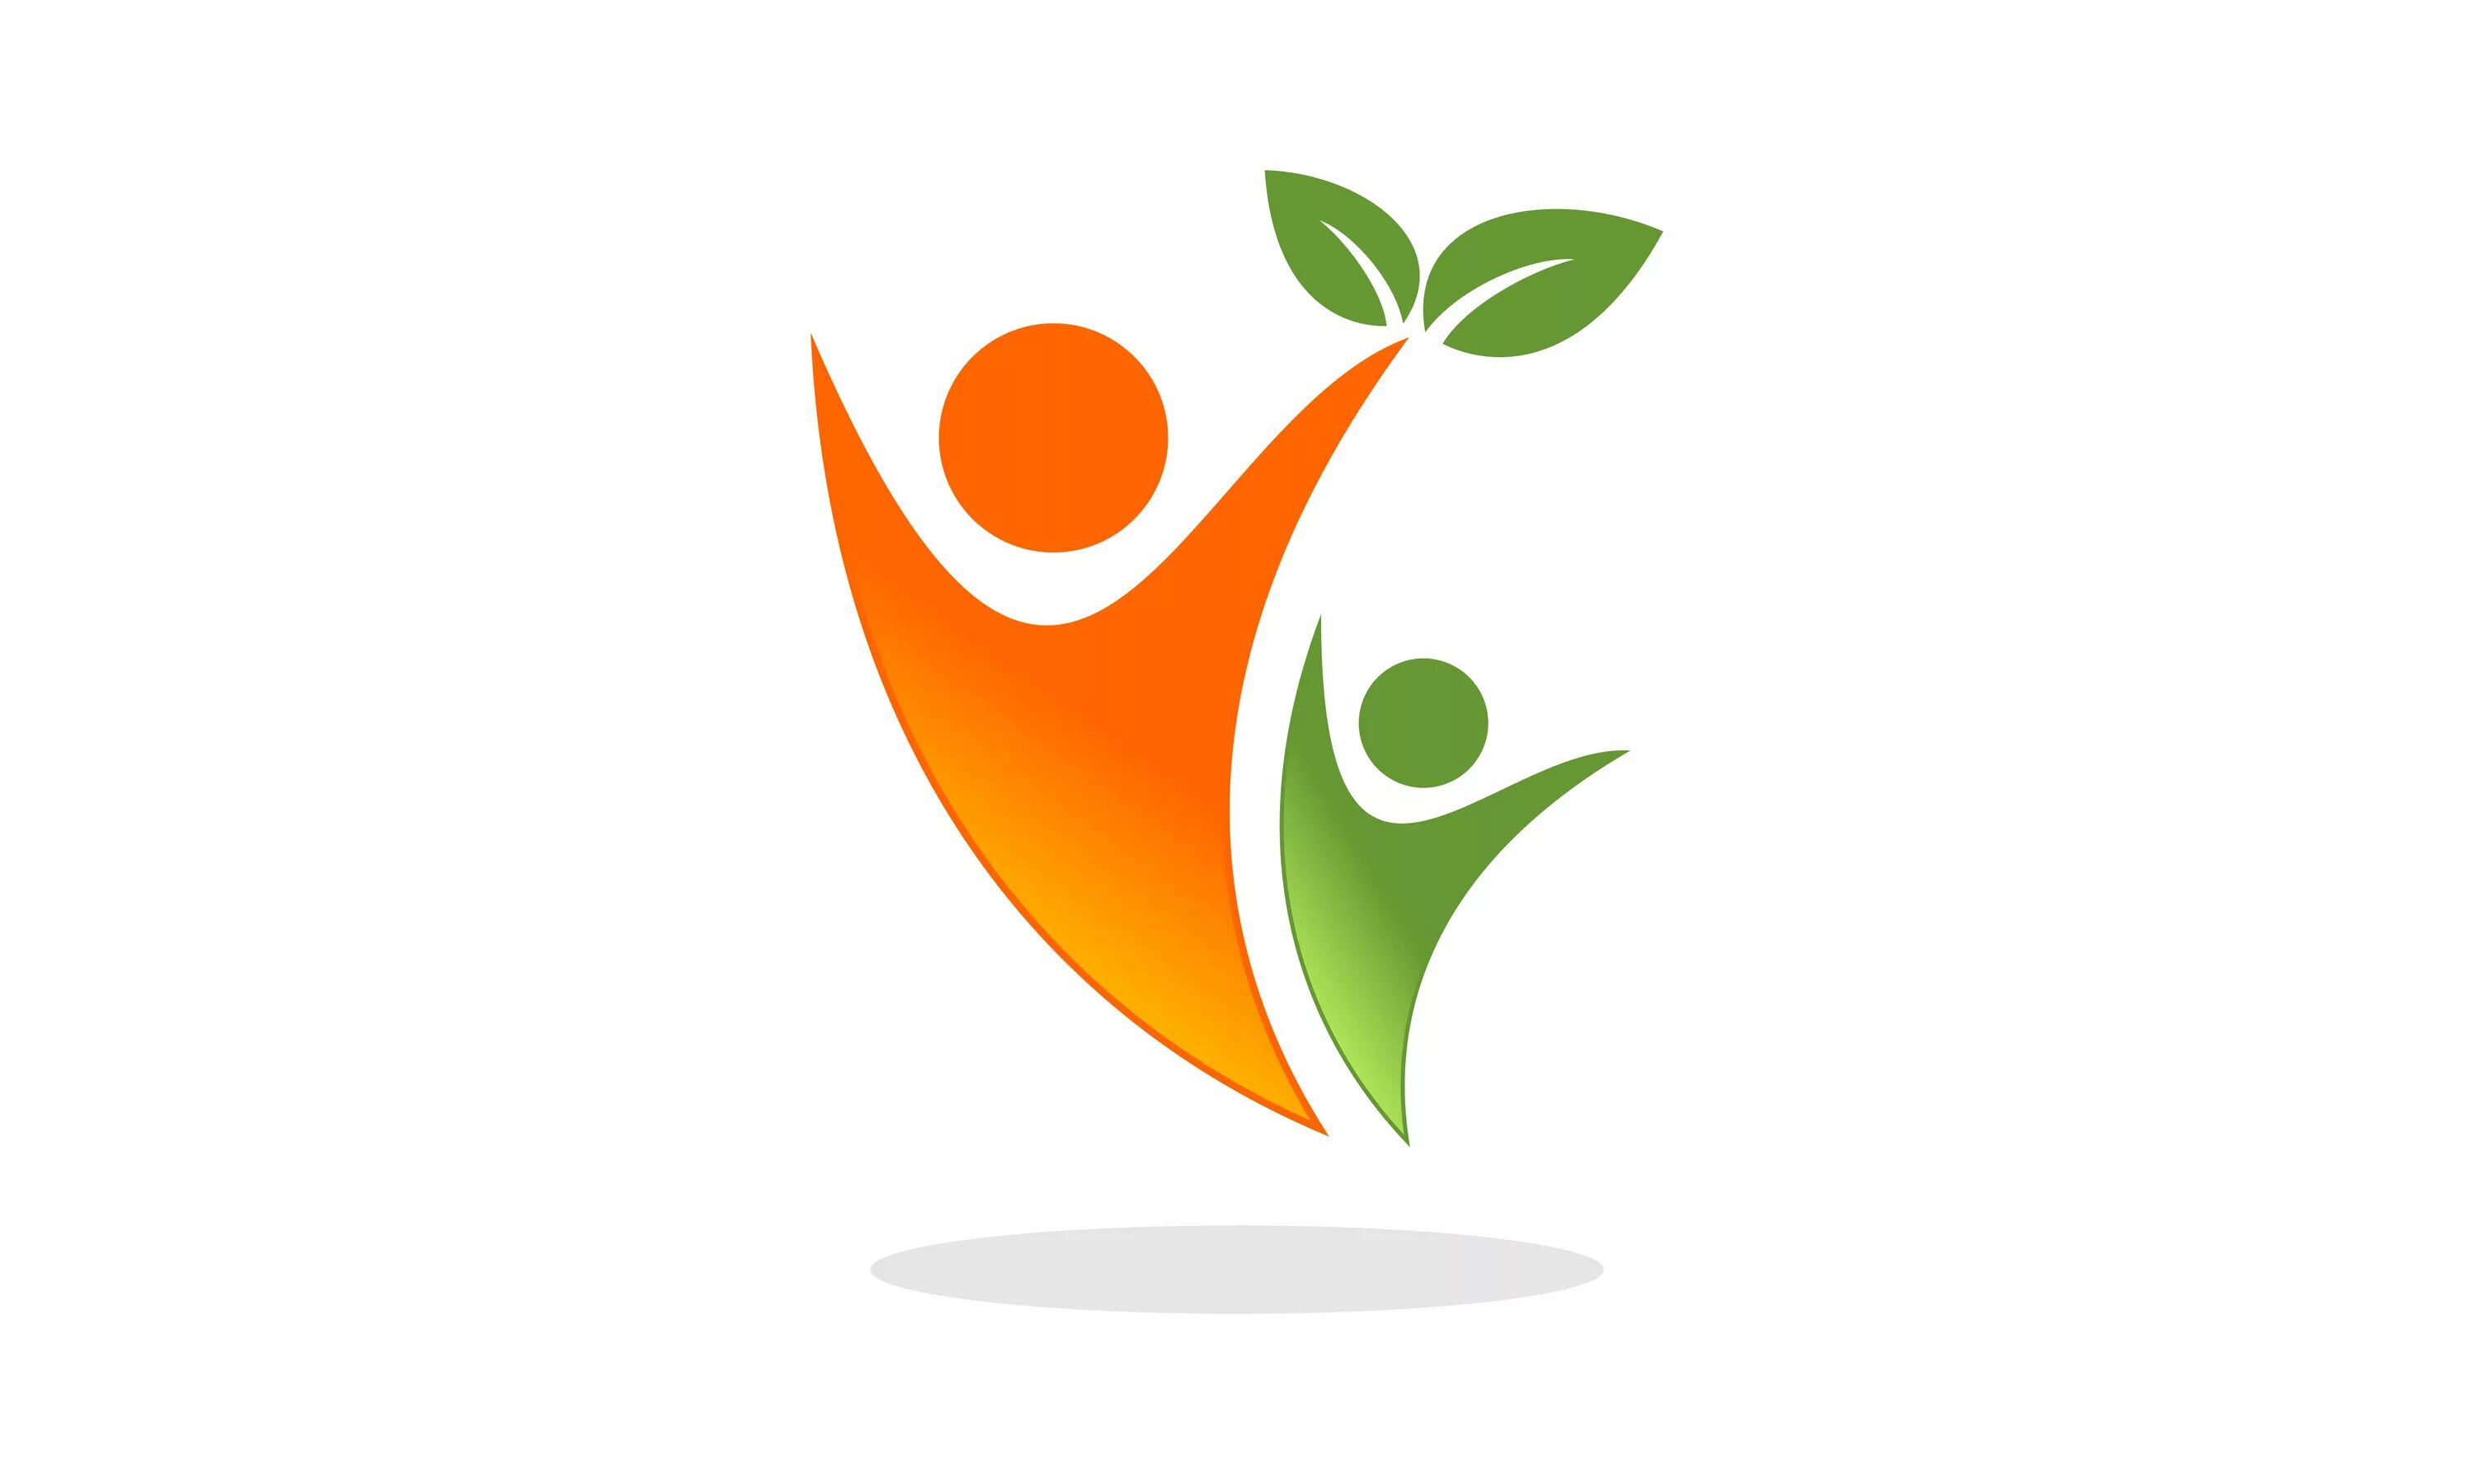 Росток логотип. Оранжево зеленый логотип. Логотип Росток на прозрачном фоне. Hjcnbr логотип.